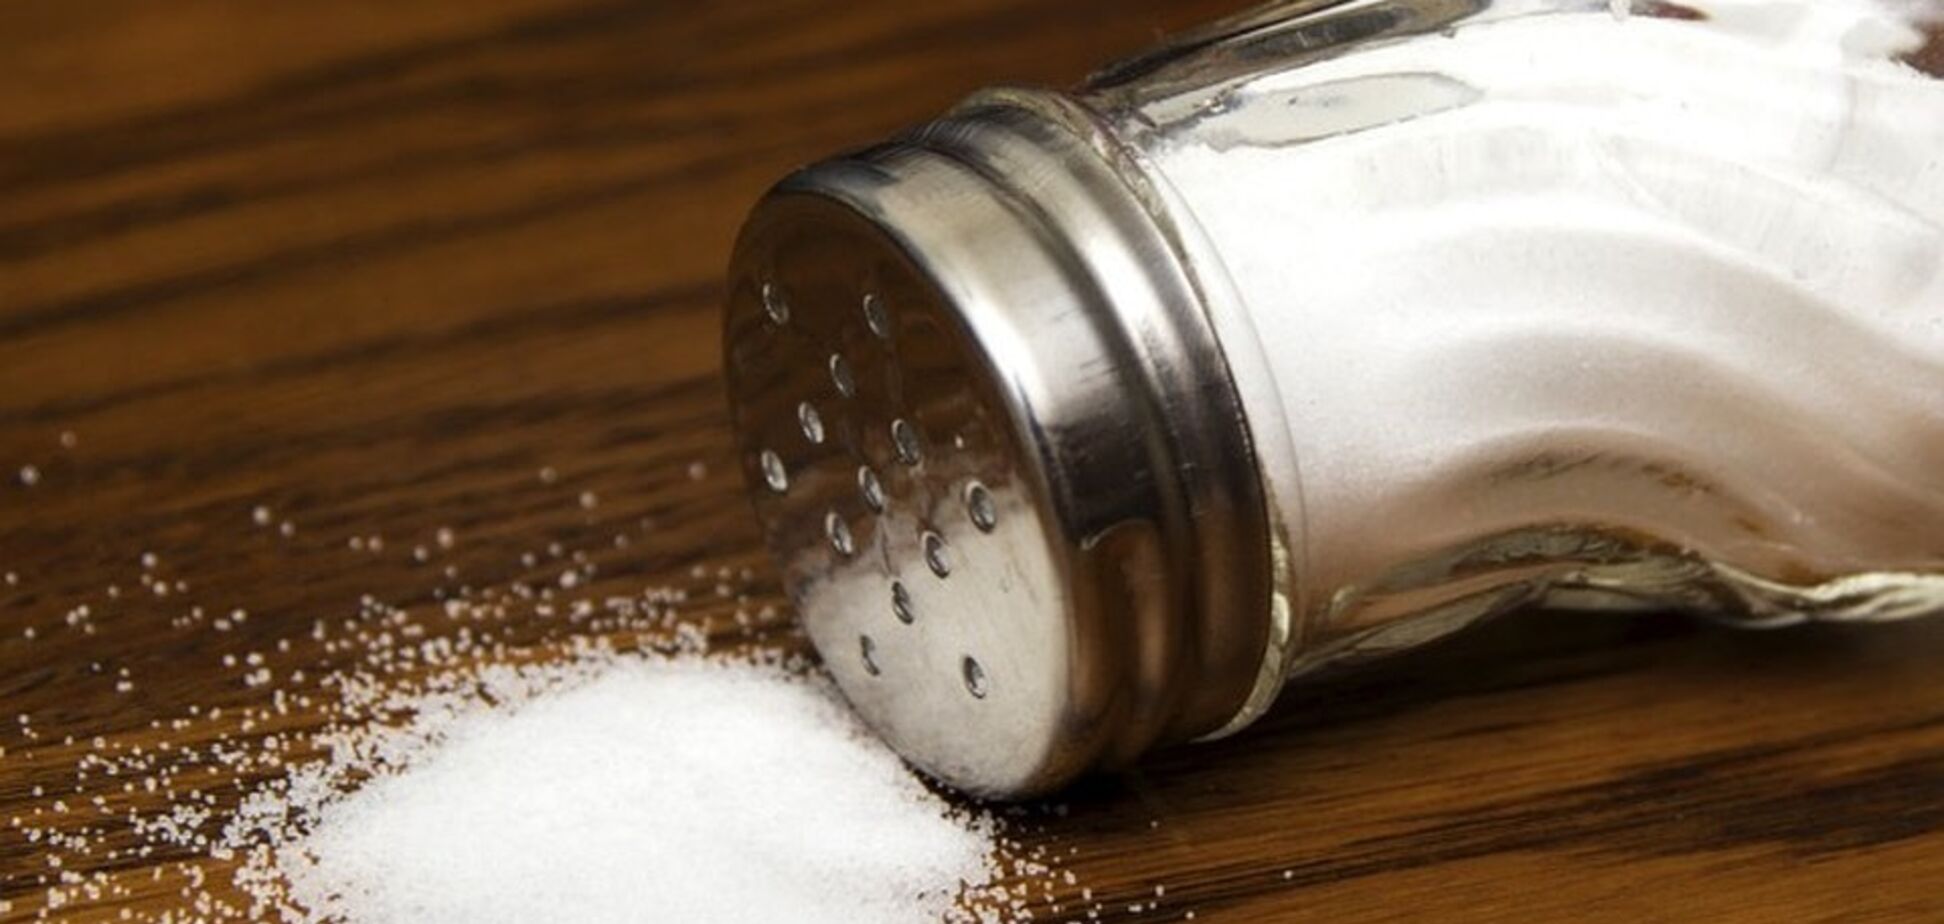 Опасна для жизни: в соли нашли токсические добавки